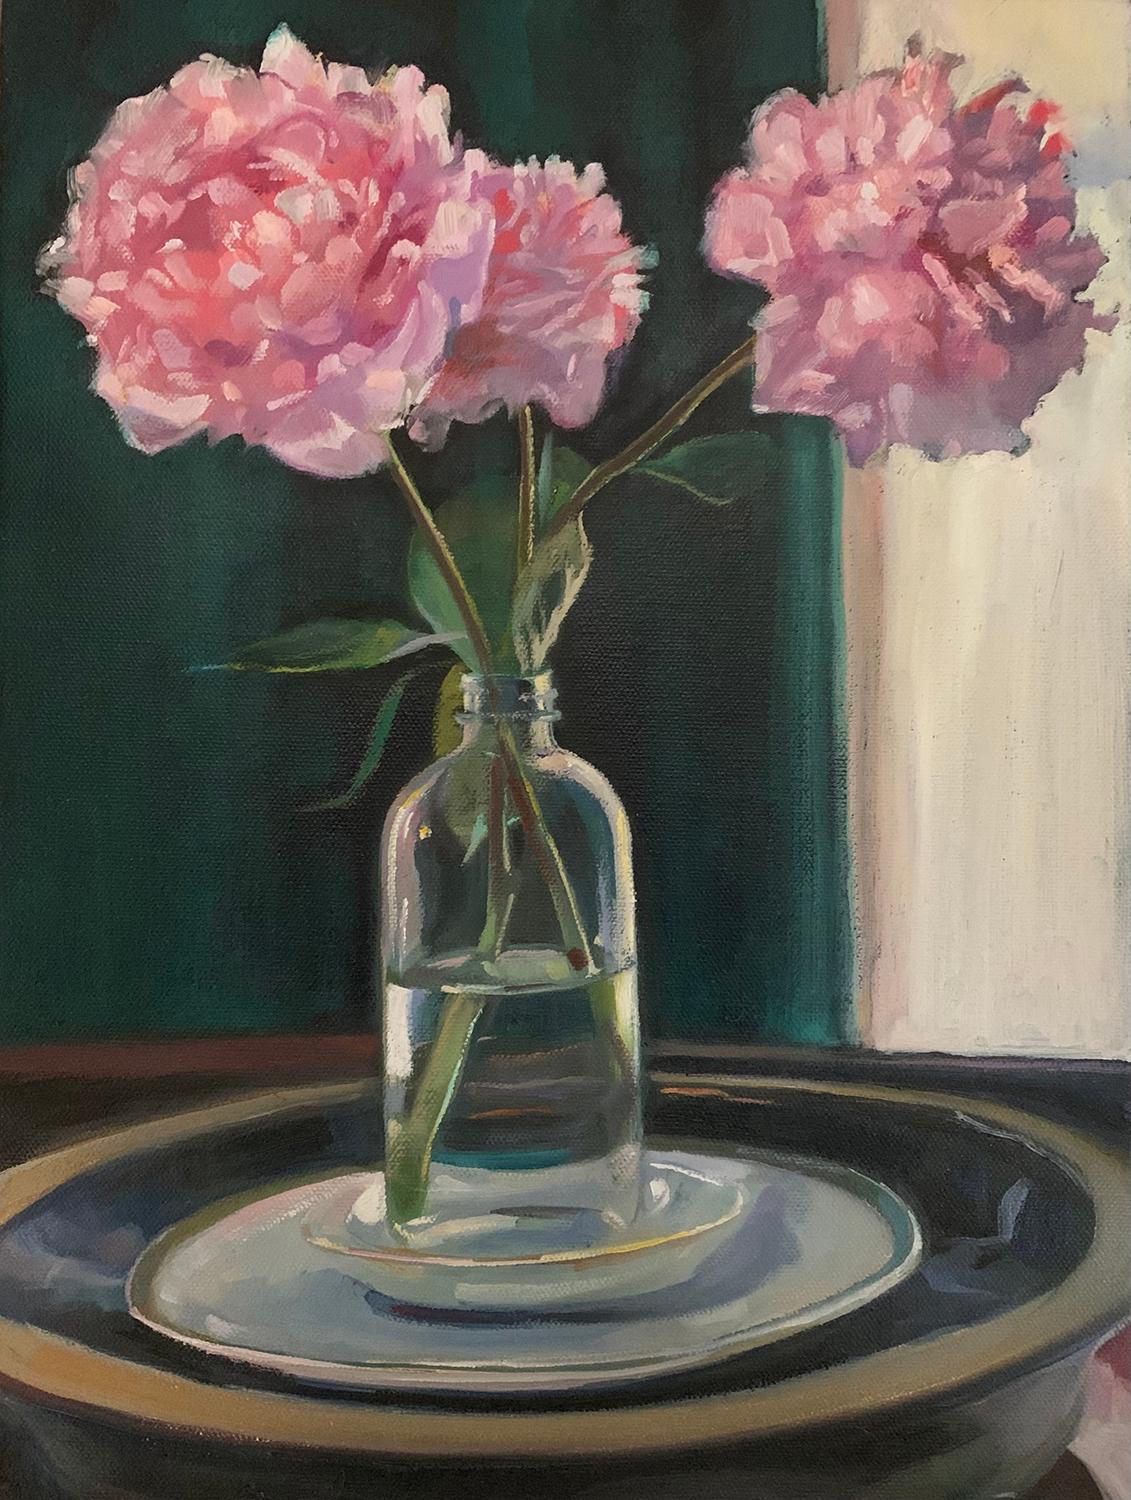 Peony (Stillleben-Gemälde einer rosa Blume in einem Innenraum, gerahmt) – Painting von Carl Grauer